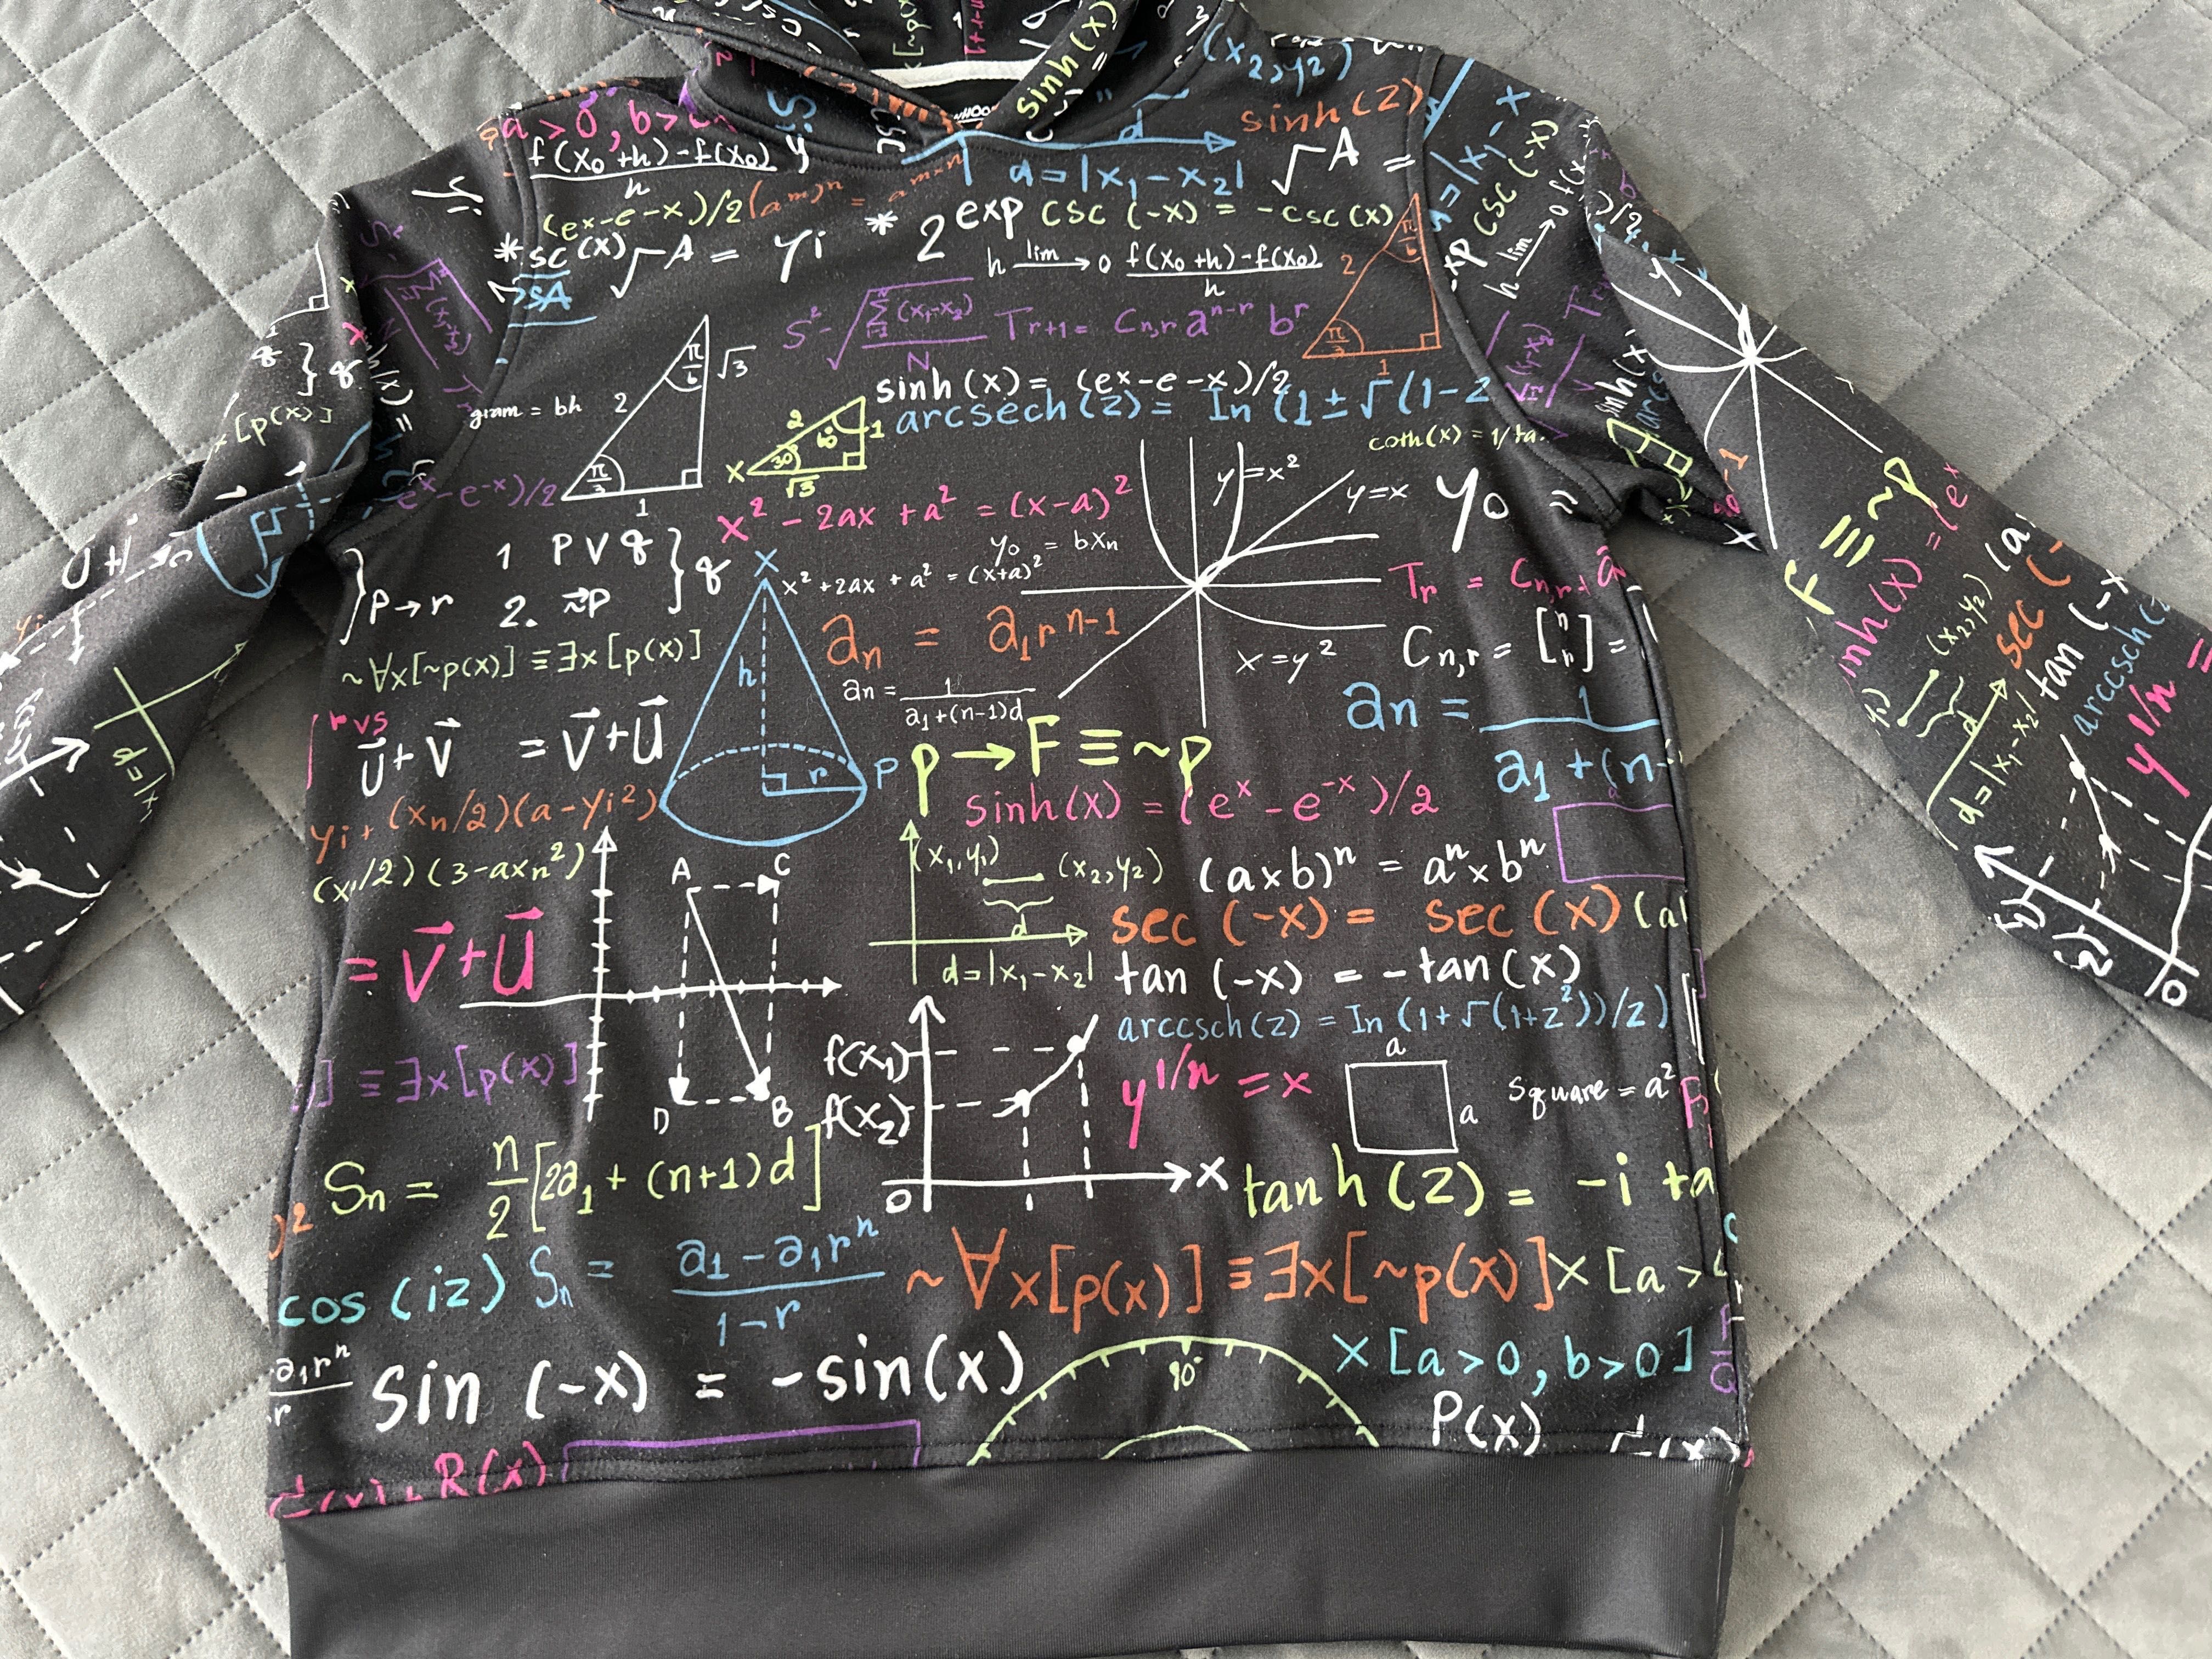 Bluza matematyczna, rozmiar 152 cm.